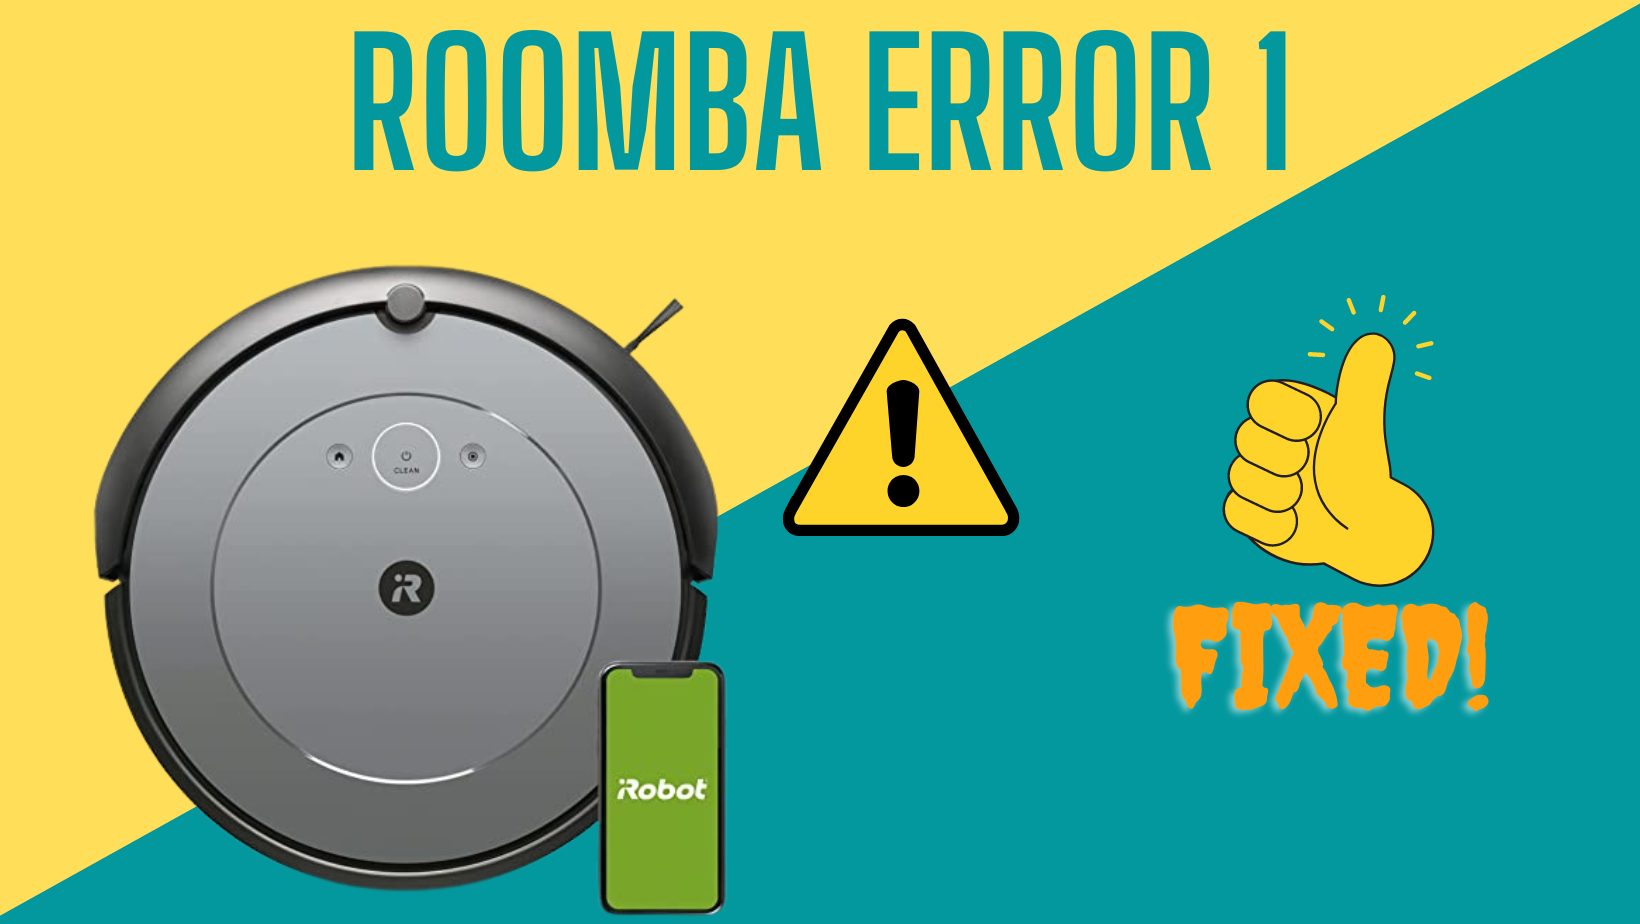 Roomba Error 1